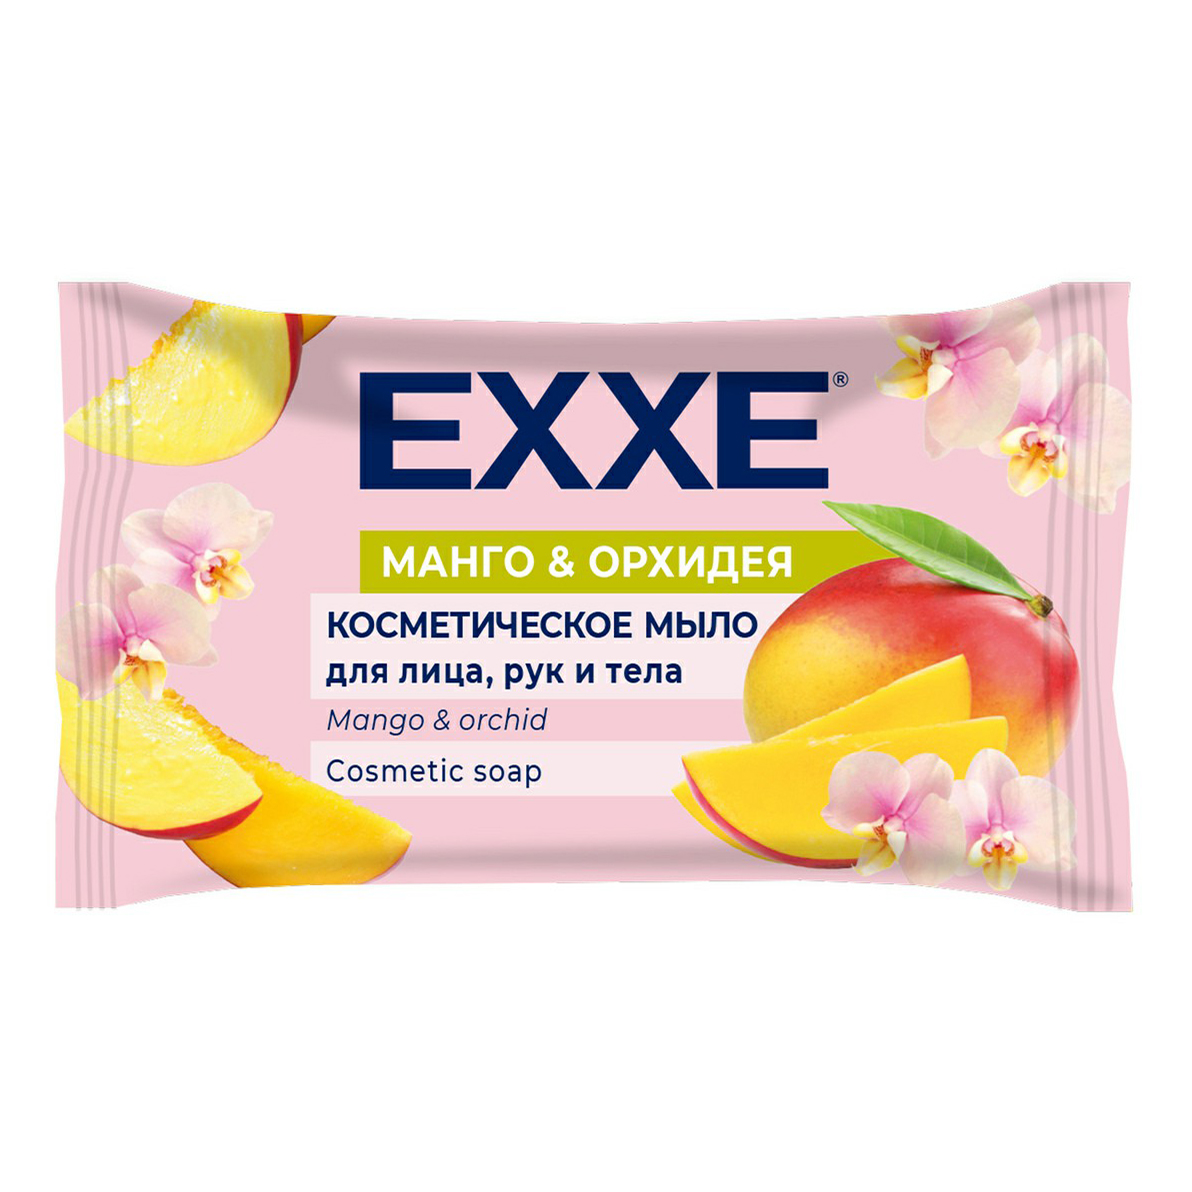 Туалетное мыло Exxe косметическое Манго и орхидея 75 г туалетное мыло косметическое exxe манго и орхидея 75 г